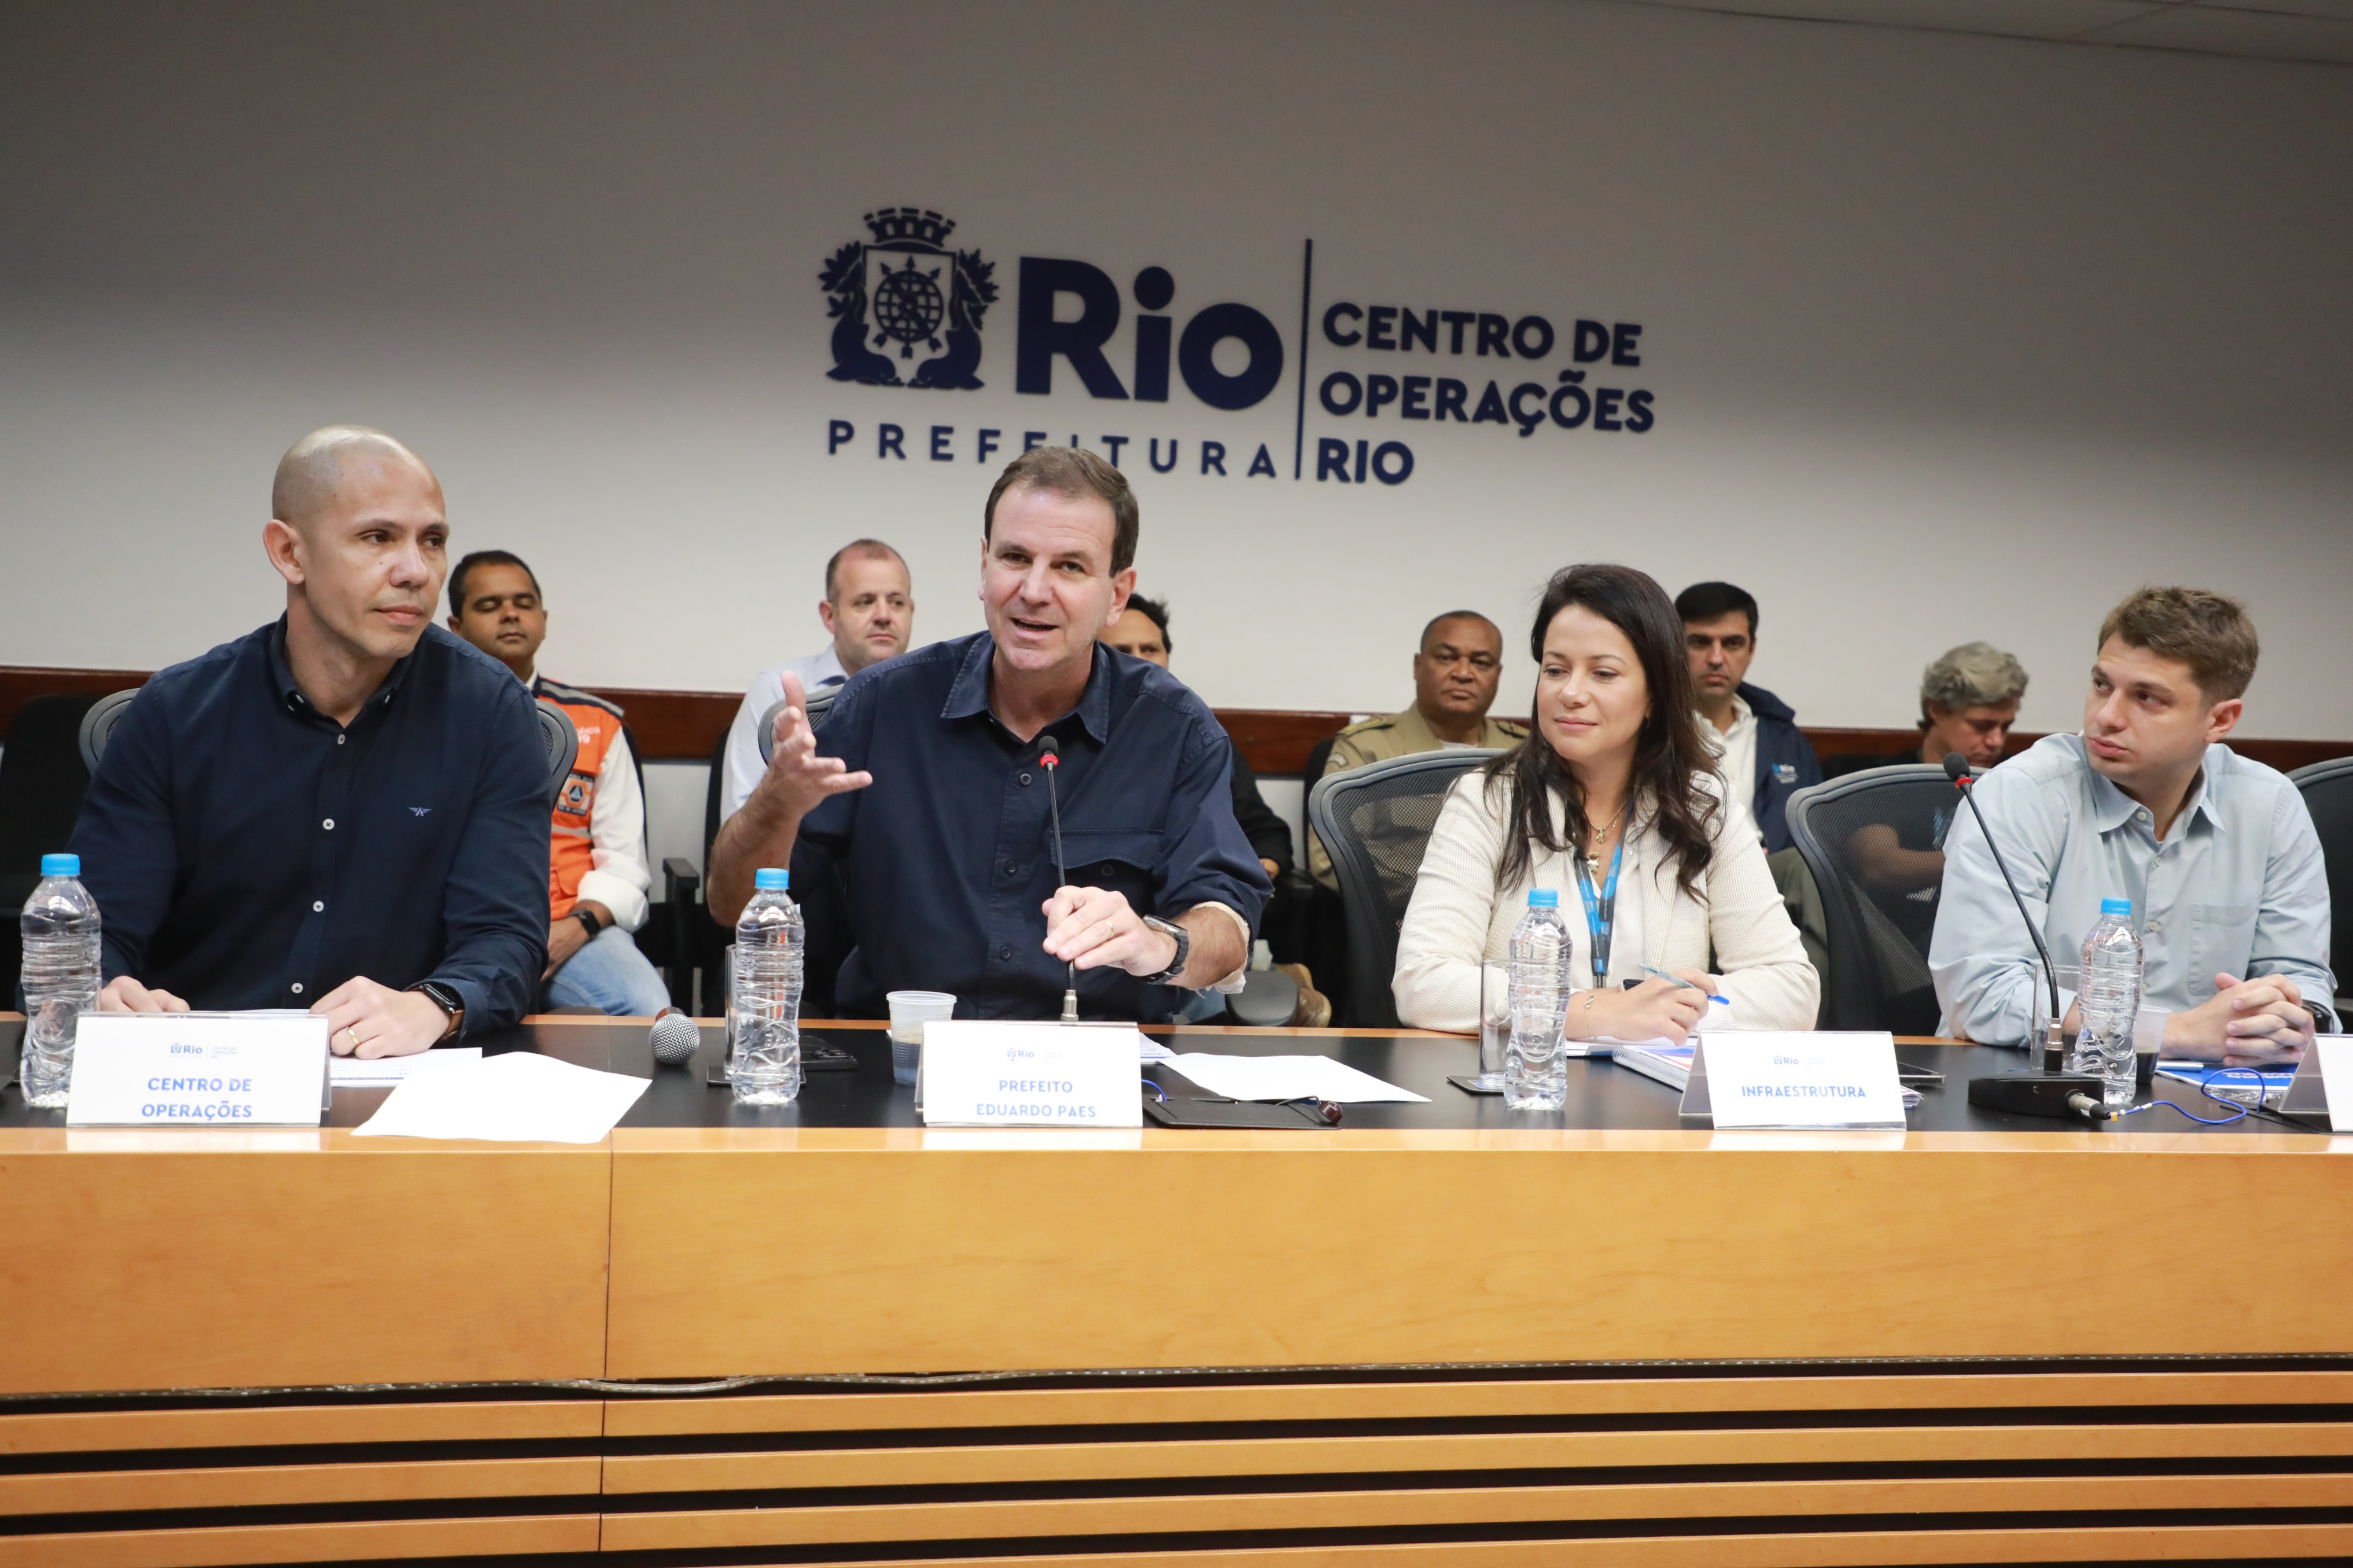 Região do Maracanã terá interdições para jogo do Fluminense pela Copa  Libertadores - Prefeitura da Cidade do Rio de Janeiro 